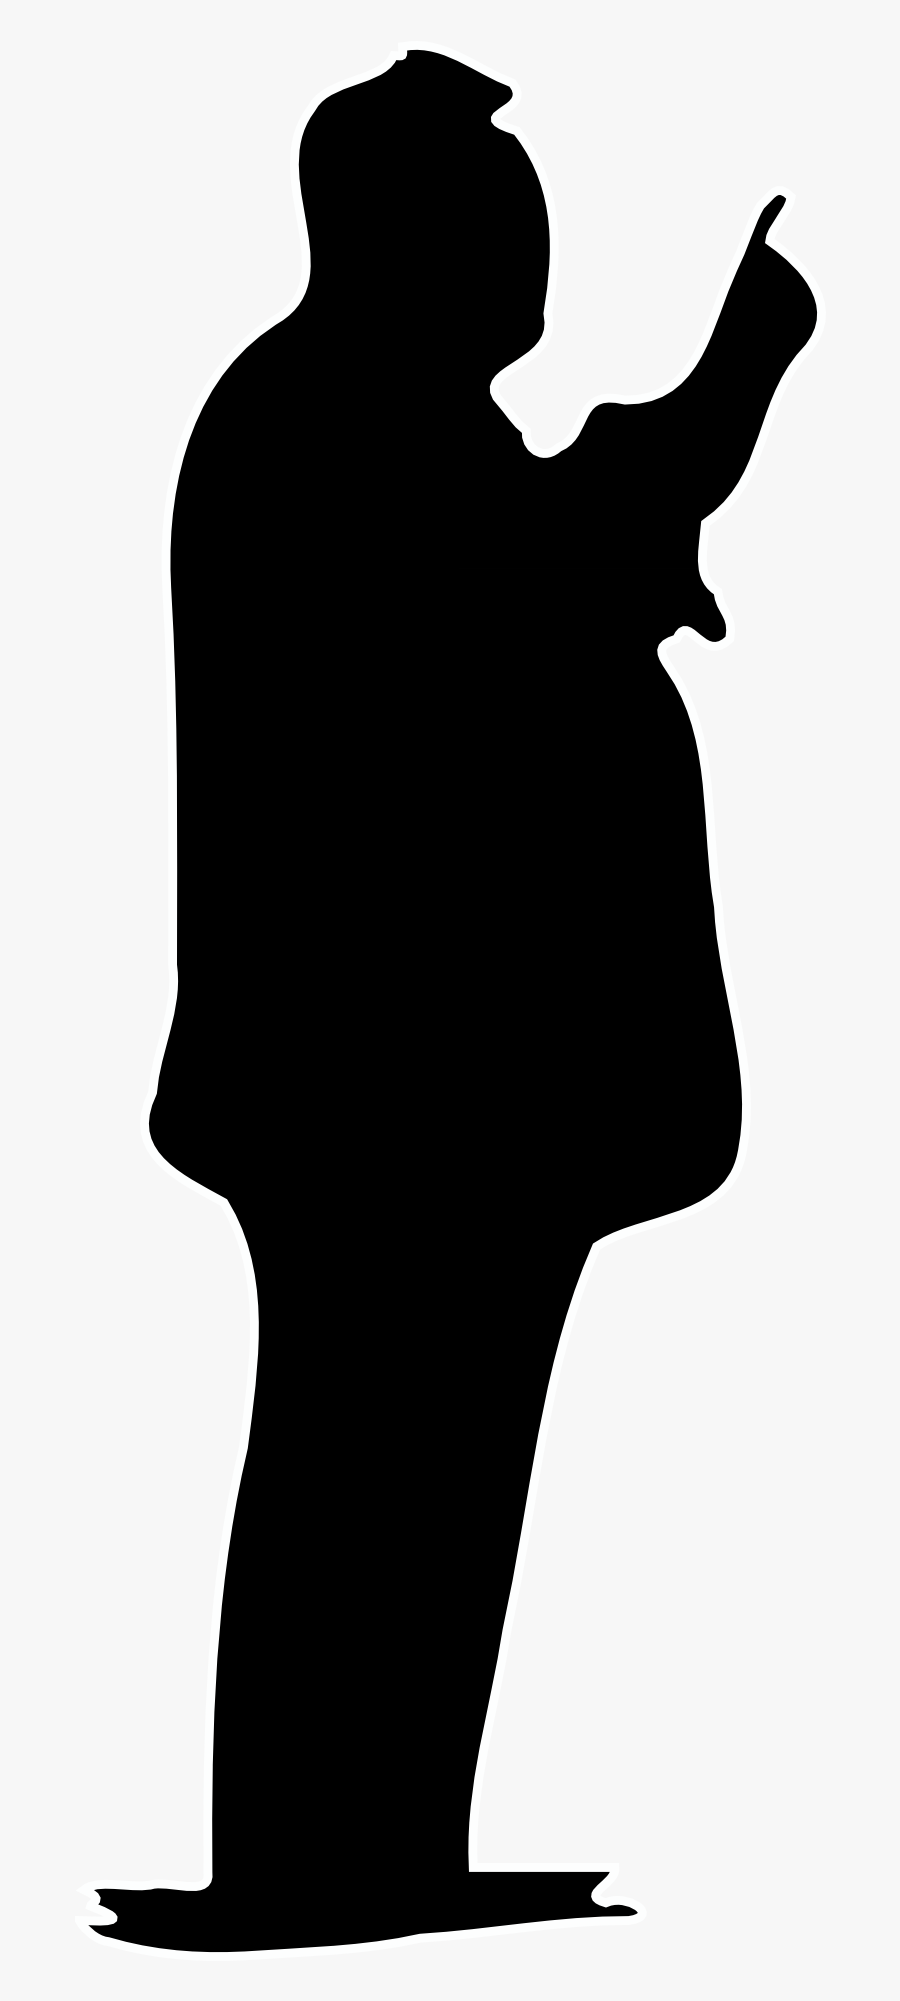 James Bond Silhouette Clip Art - Person Silhouette, Transparent Clipart